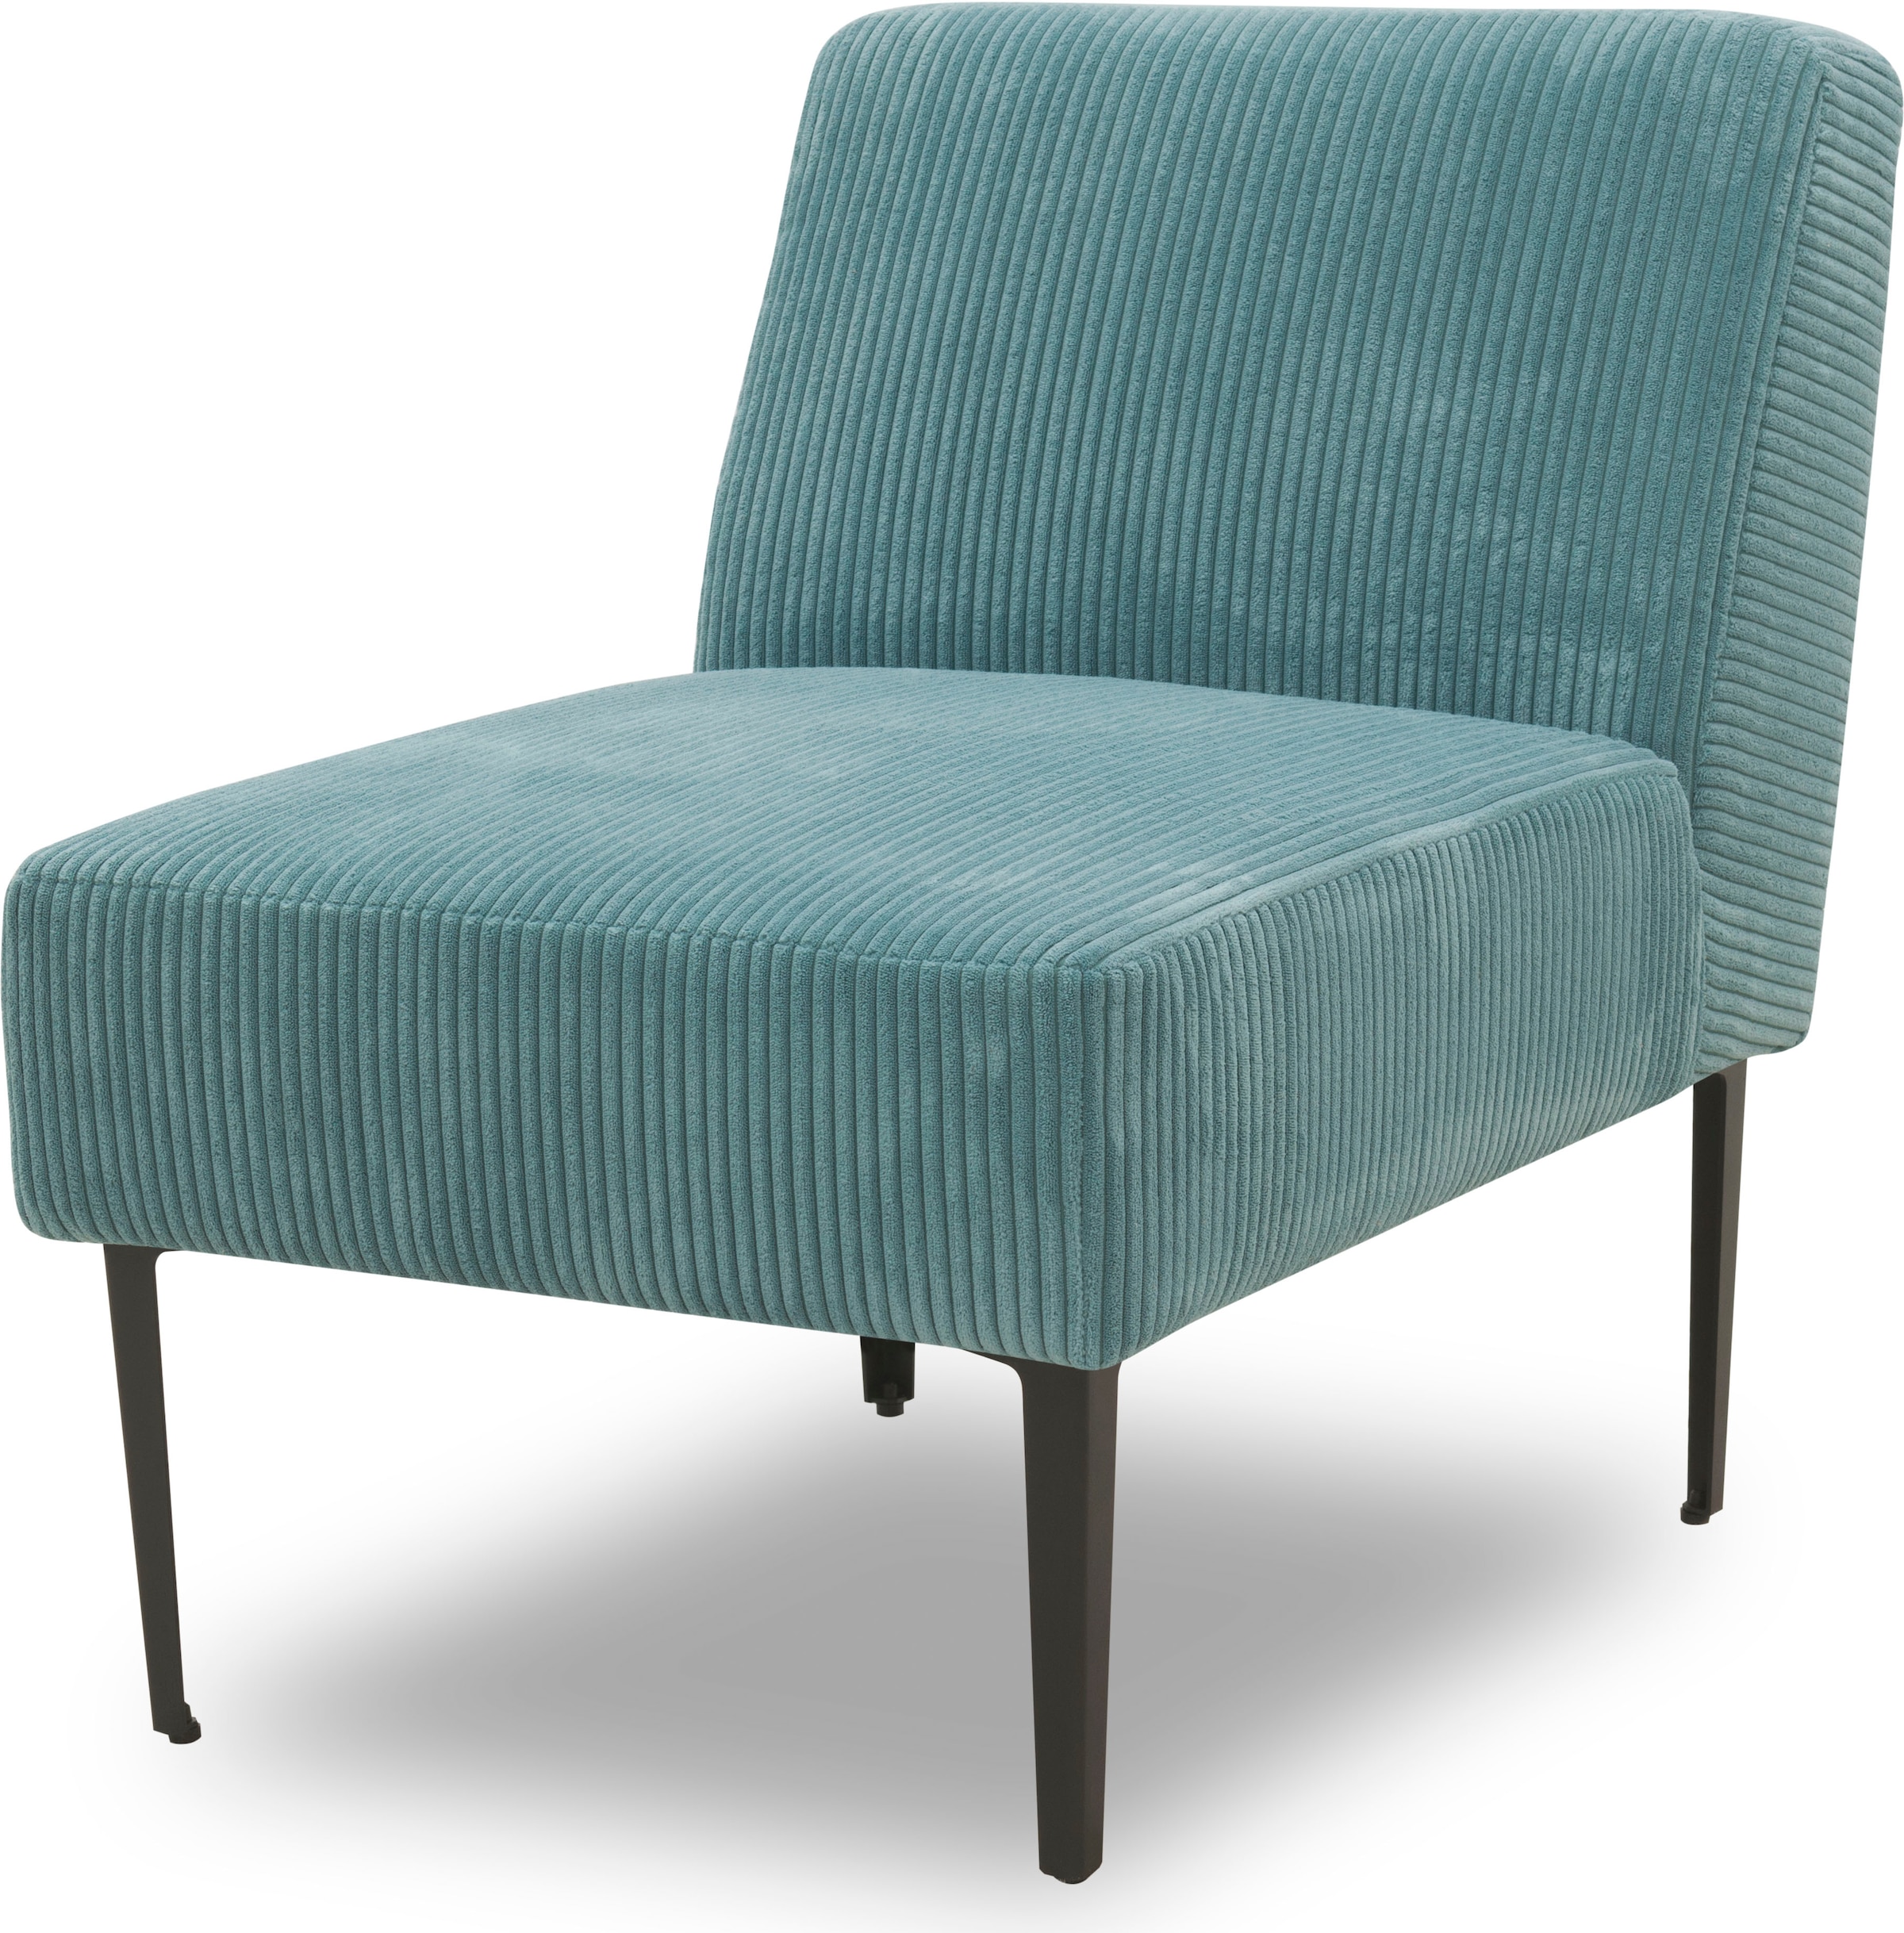 DOMO collection Sessel »700010 Lieferzeit nur 2 Wochen, auch einzeln stellbar«, für individuelle Zusammenstellung eines persönlichen Sofas, Cord-Bezug